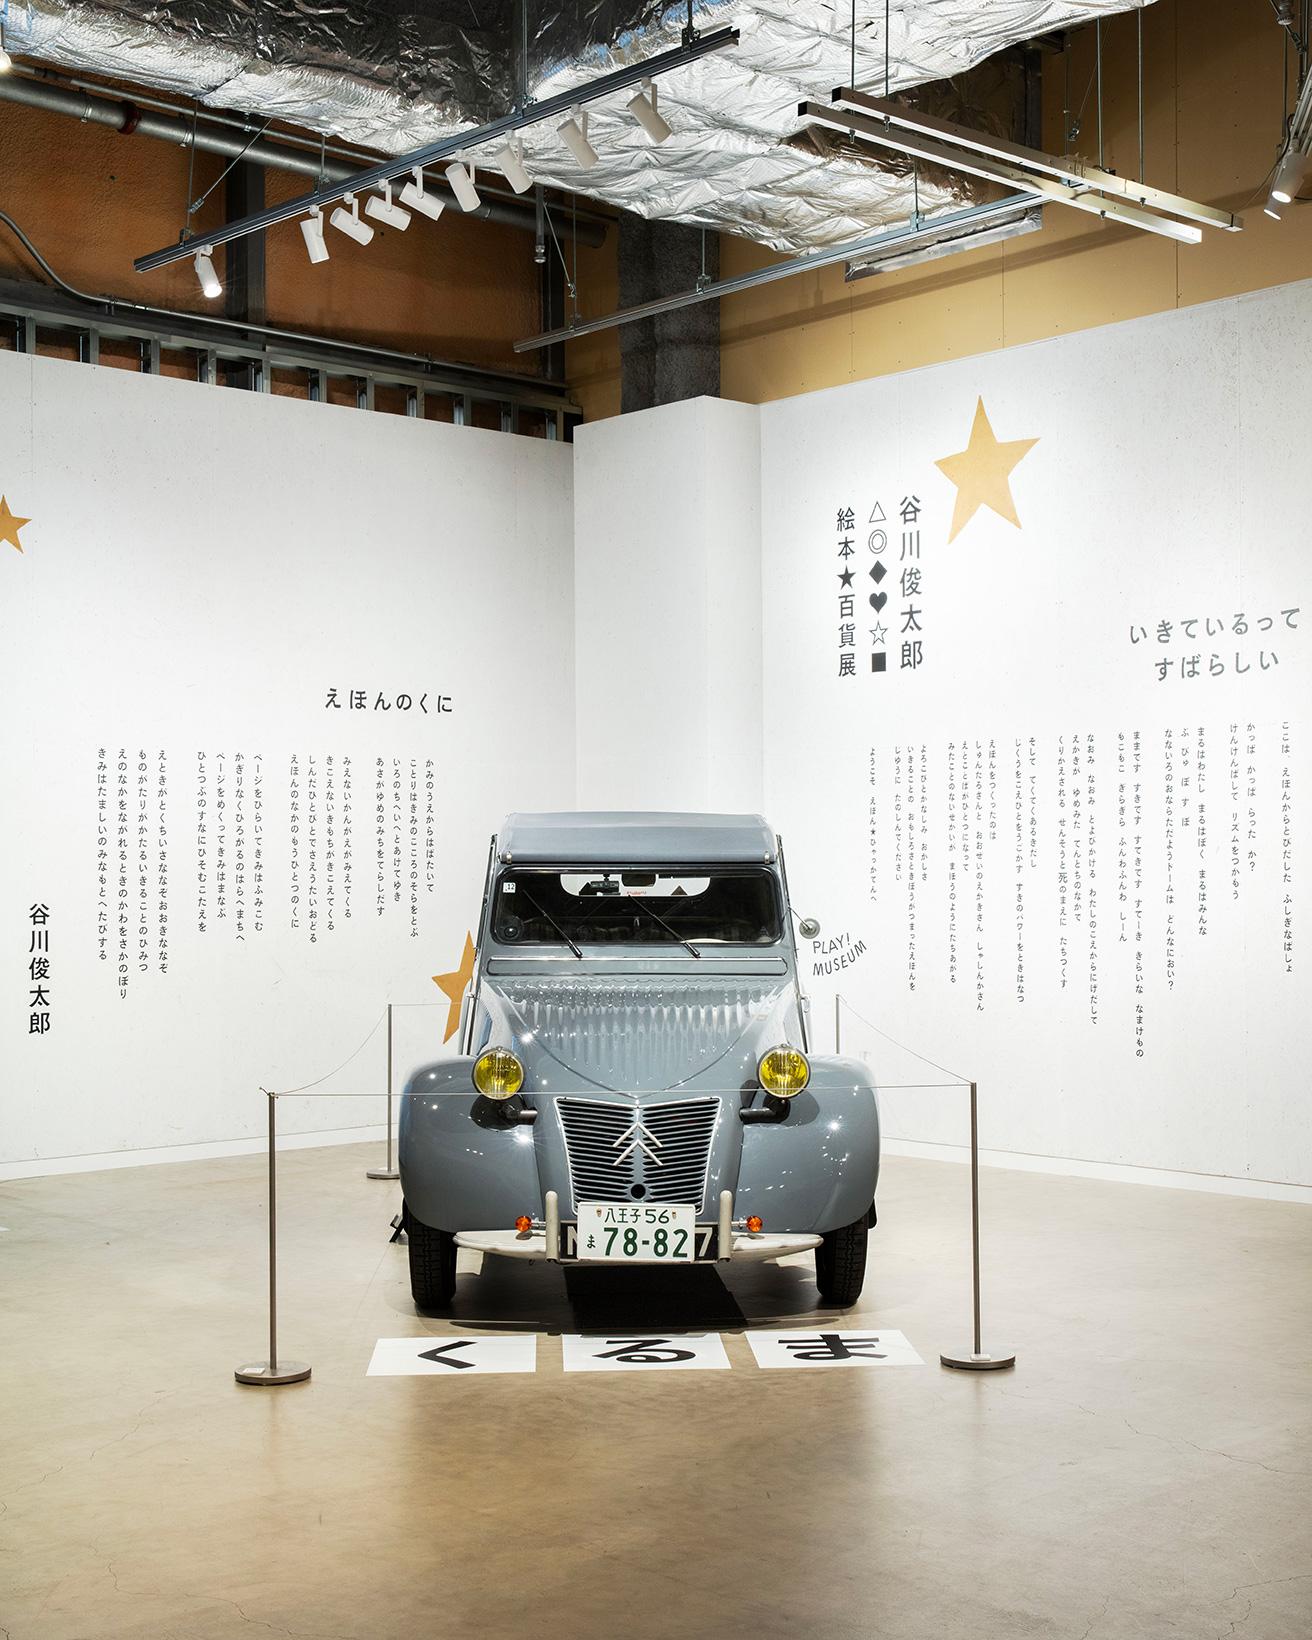 展示会場入口には、谷川さんの詩『えほんのくに』と、谷川さんが初めて購入した車、シトロエン2CVが。